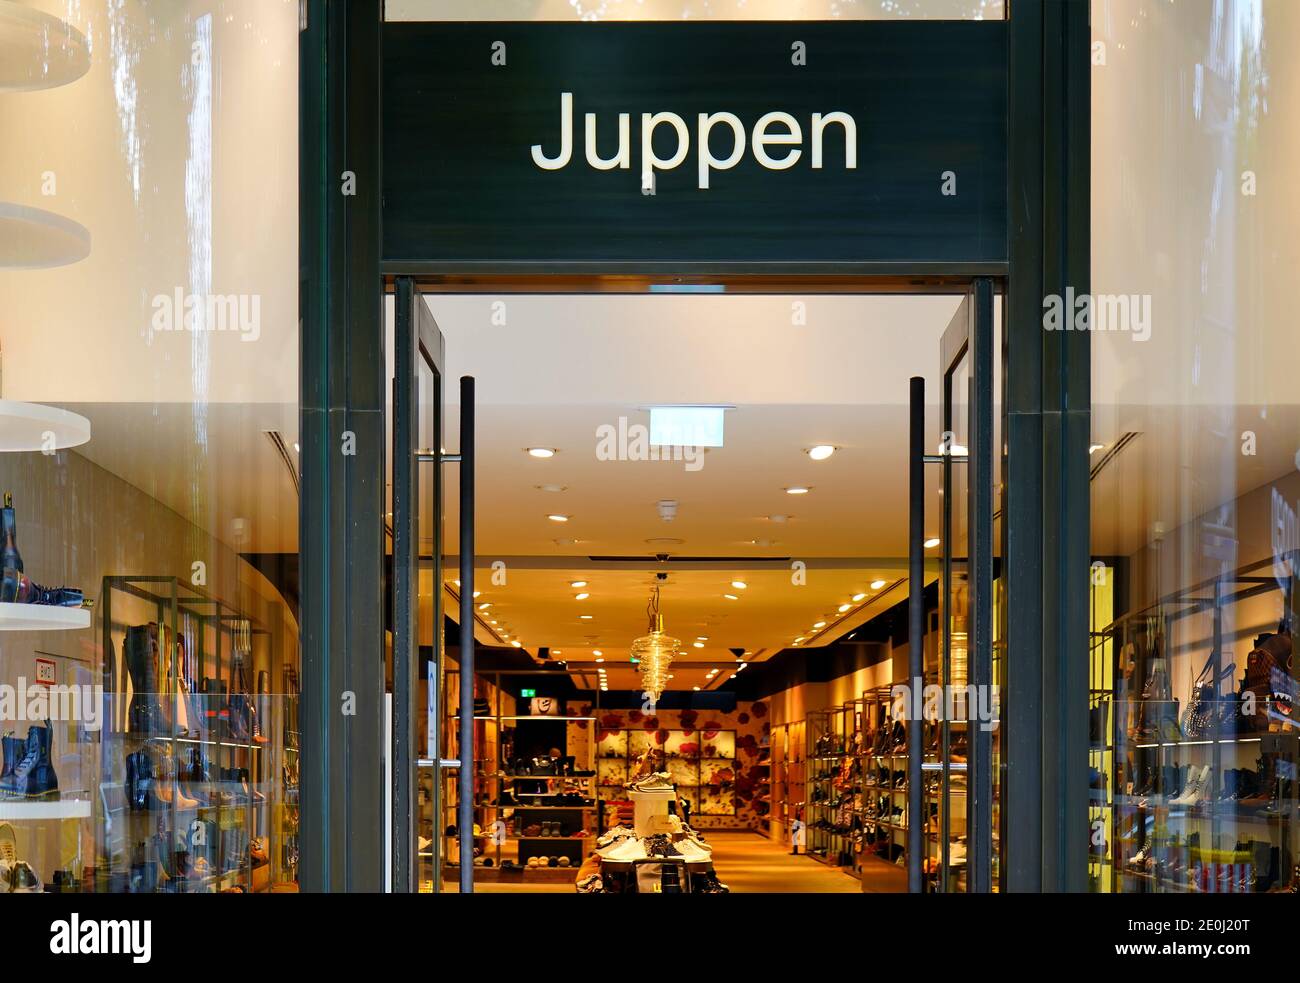 Le magasin de chaussures Juppen de Königsallee à Düsseldorf, réputé pour ses chaussures de haute qualité. Banque D'Images